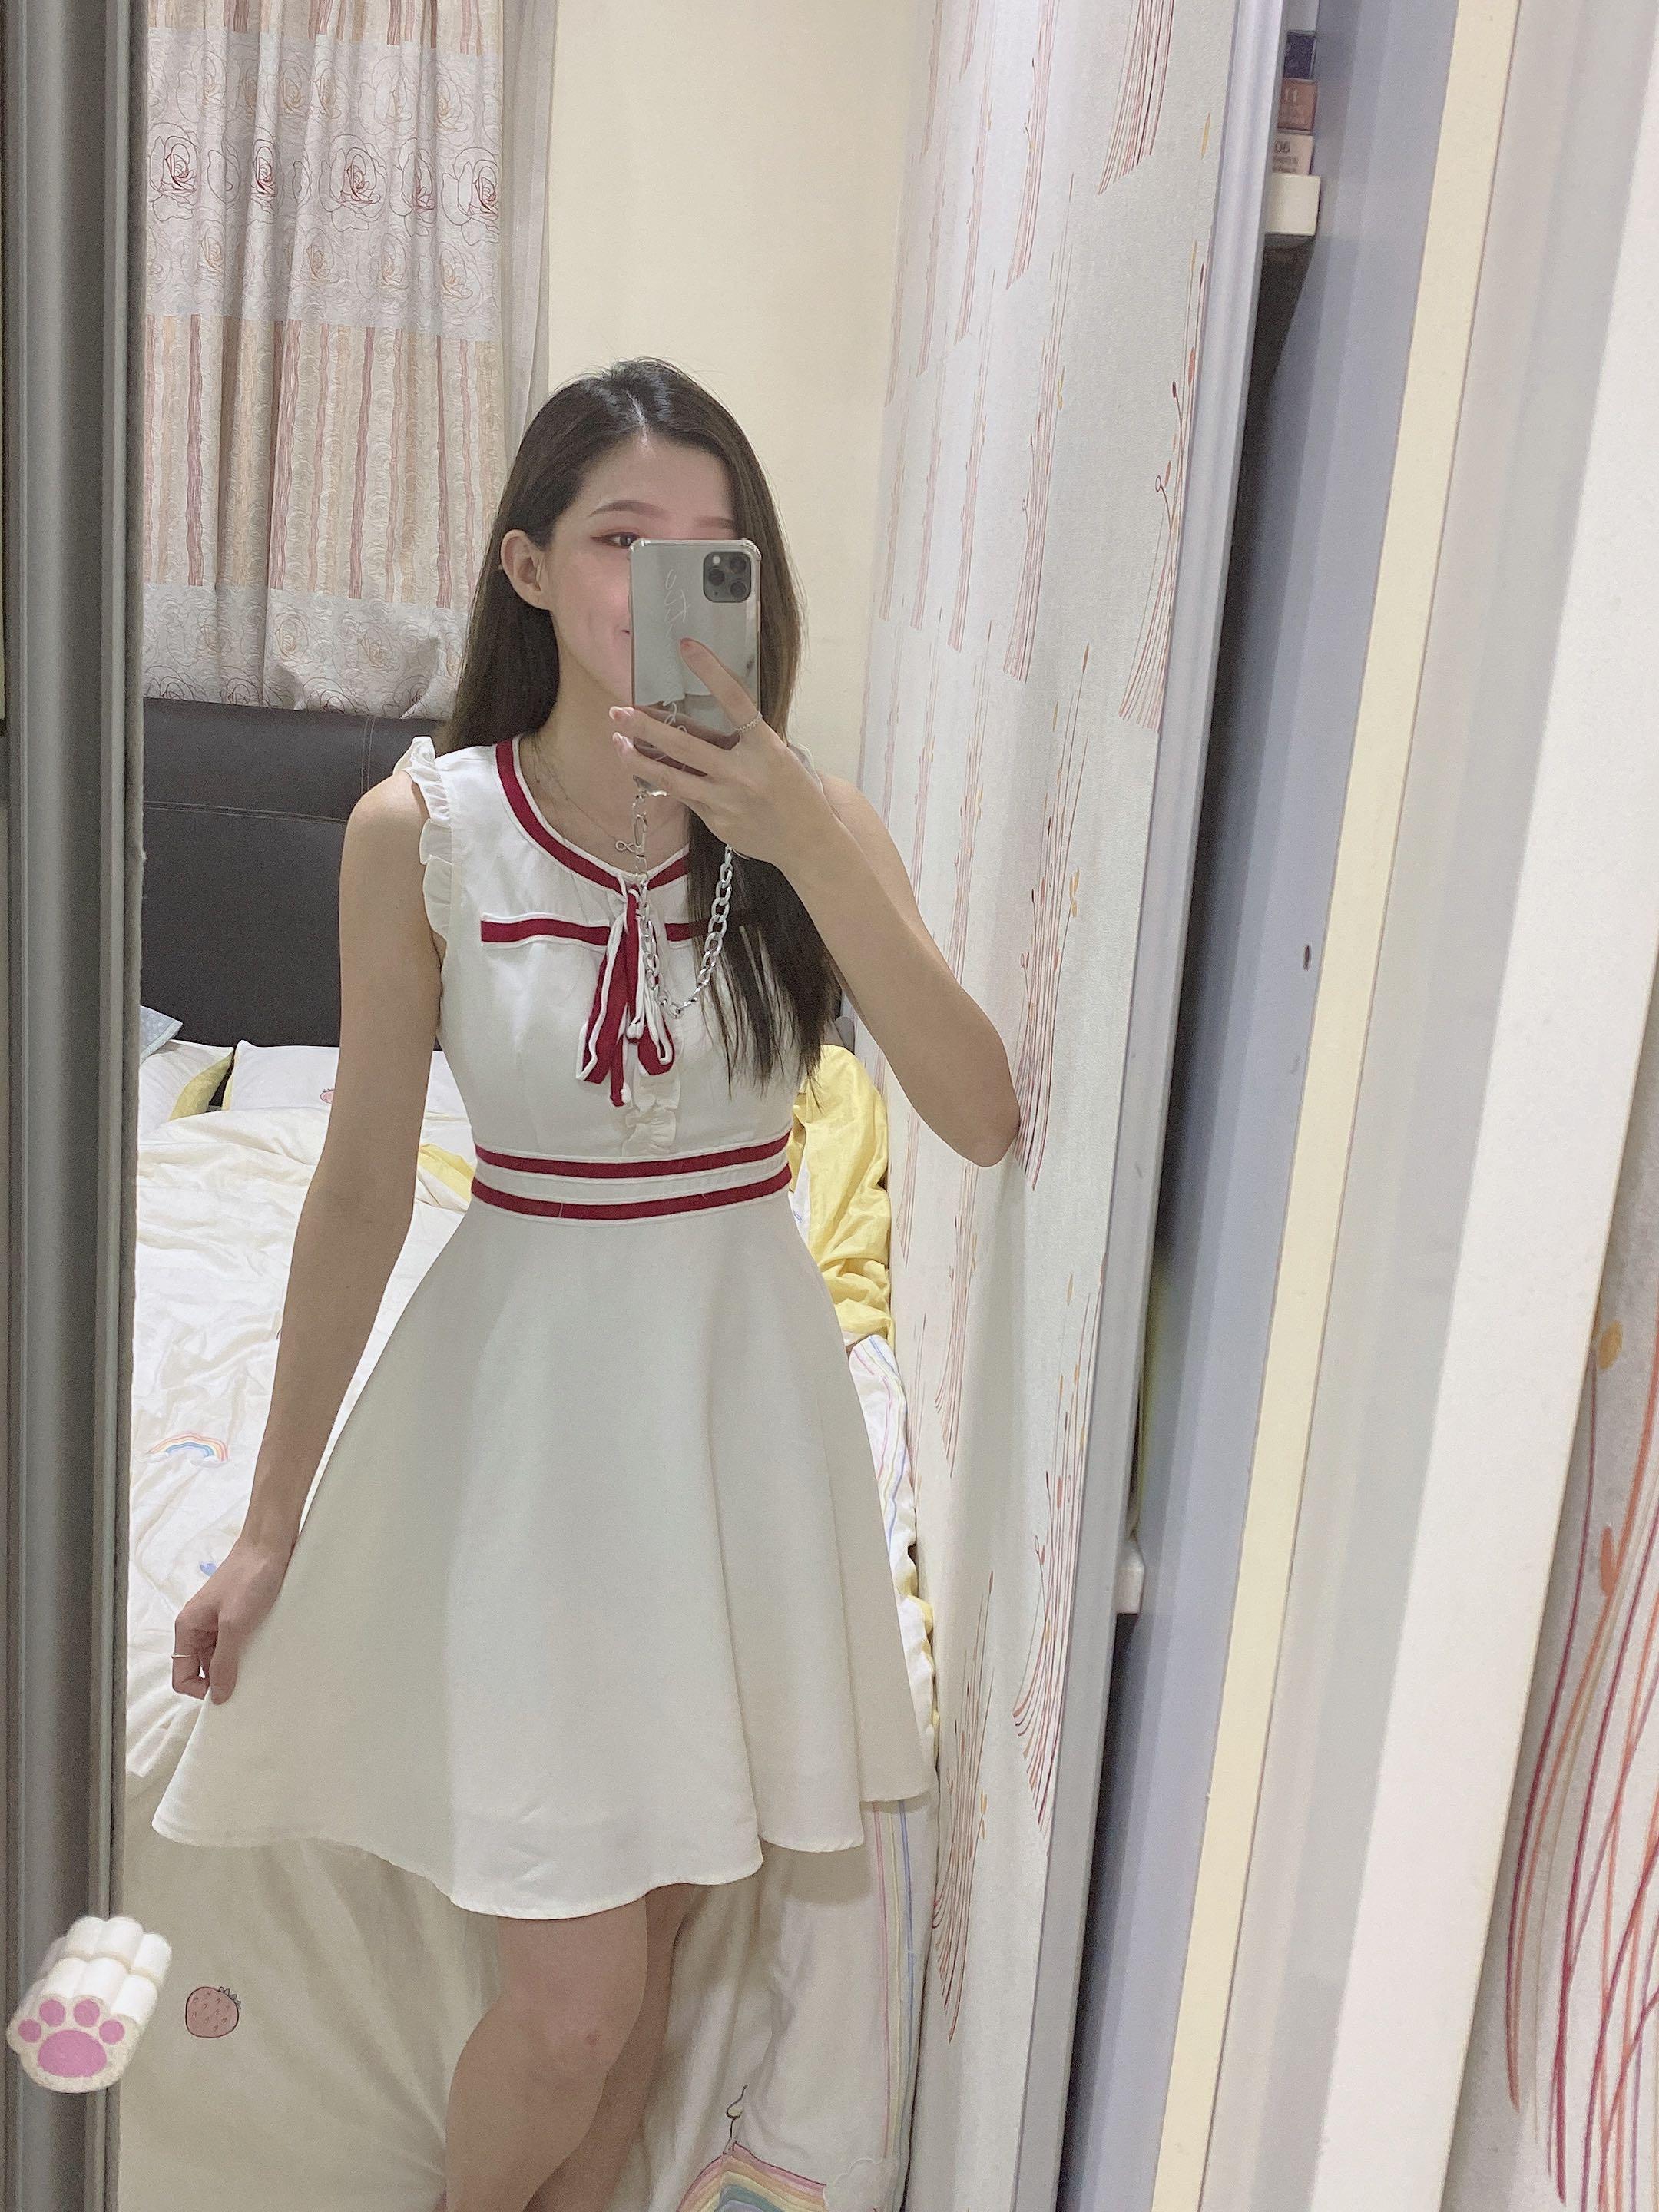 White/Apple Red A-Line Flower Pin Satin Flower Girl Dress 821S - White Dress  - C3/Sashes & Flowers